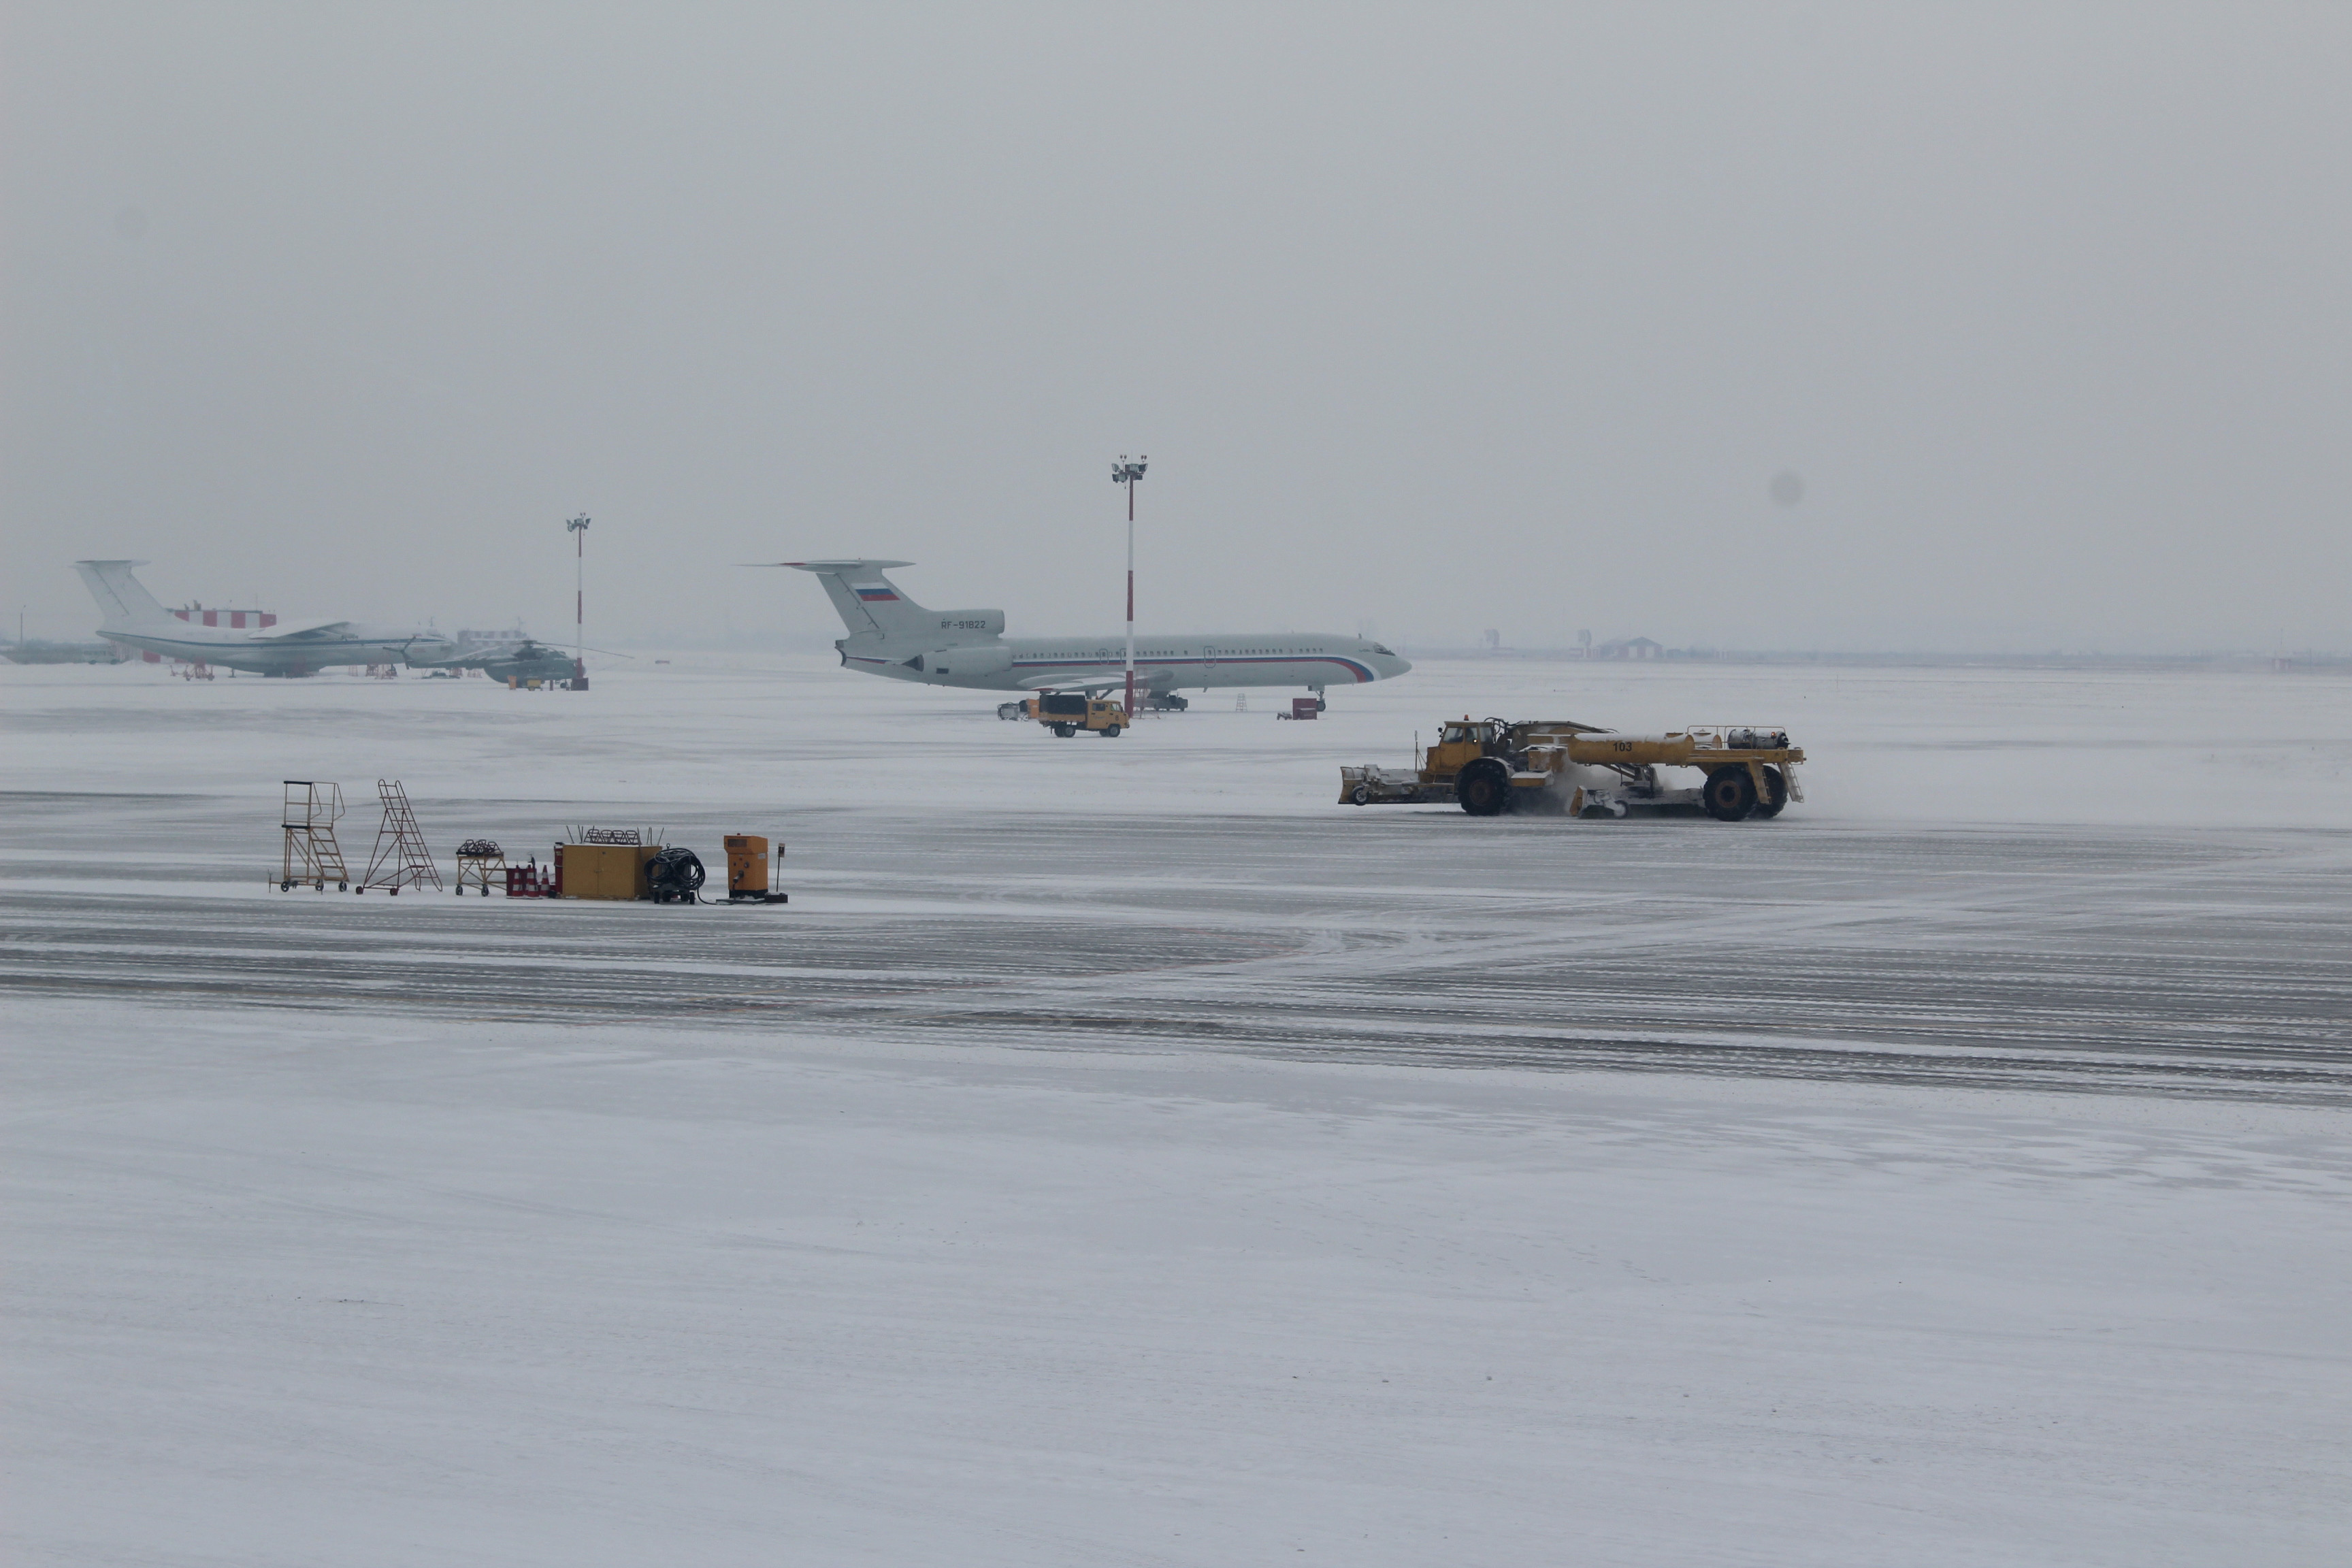 Аэропорт абакана вылет. Аэропорт Абакан самолёты. Аэропорт в снегу. Снегопад в аэропорту. Сильный снегопад самолет.